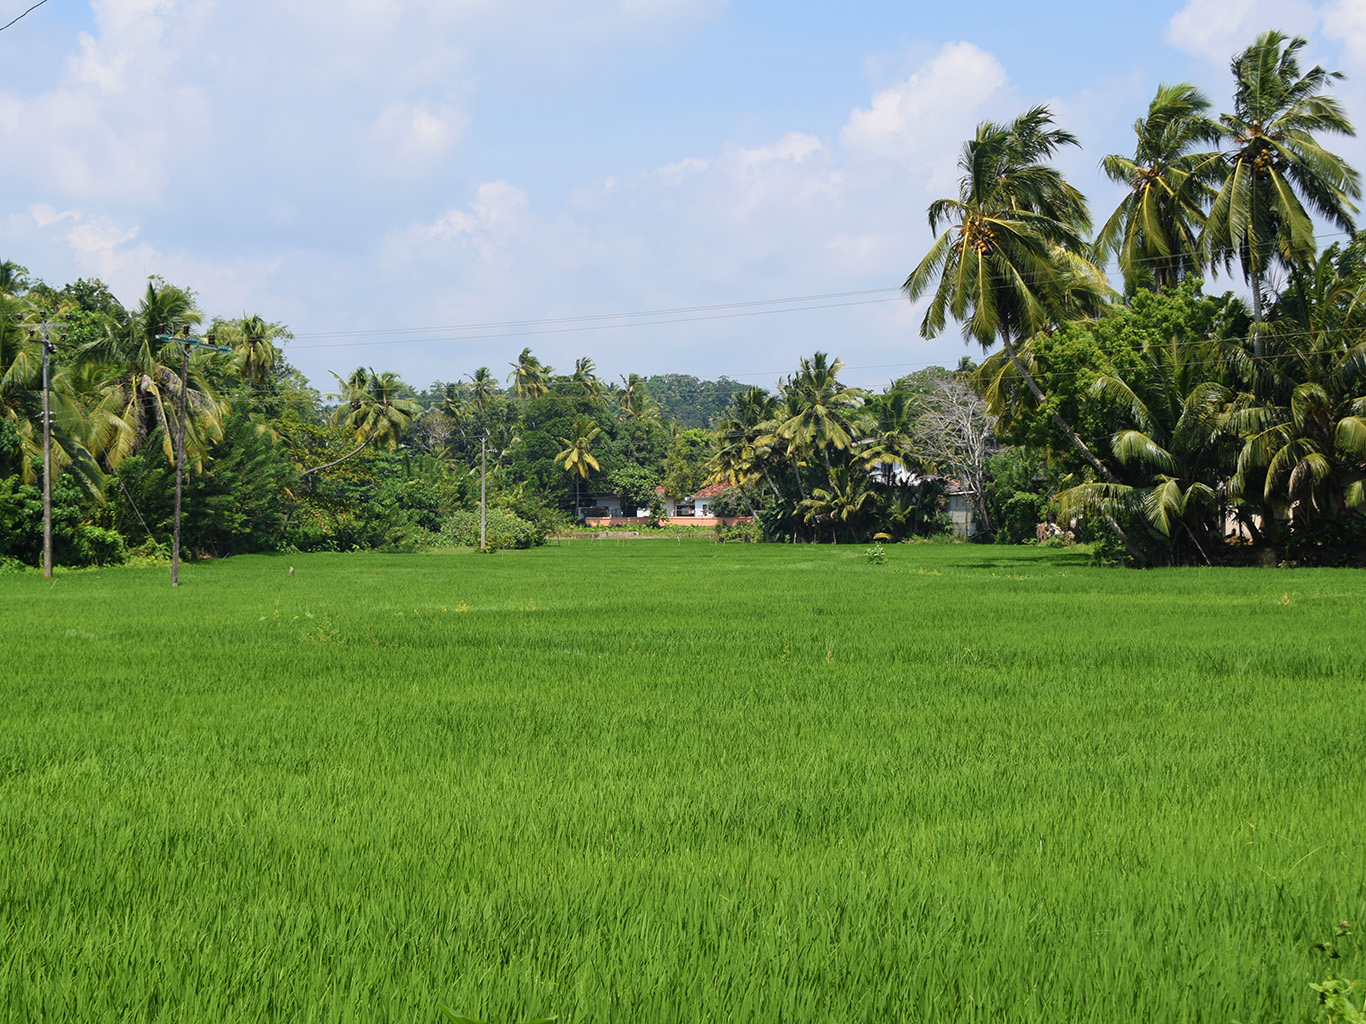 Rýžová pole patří k typickým scenériím srílanského vnitrozemí